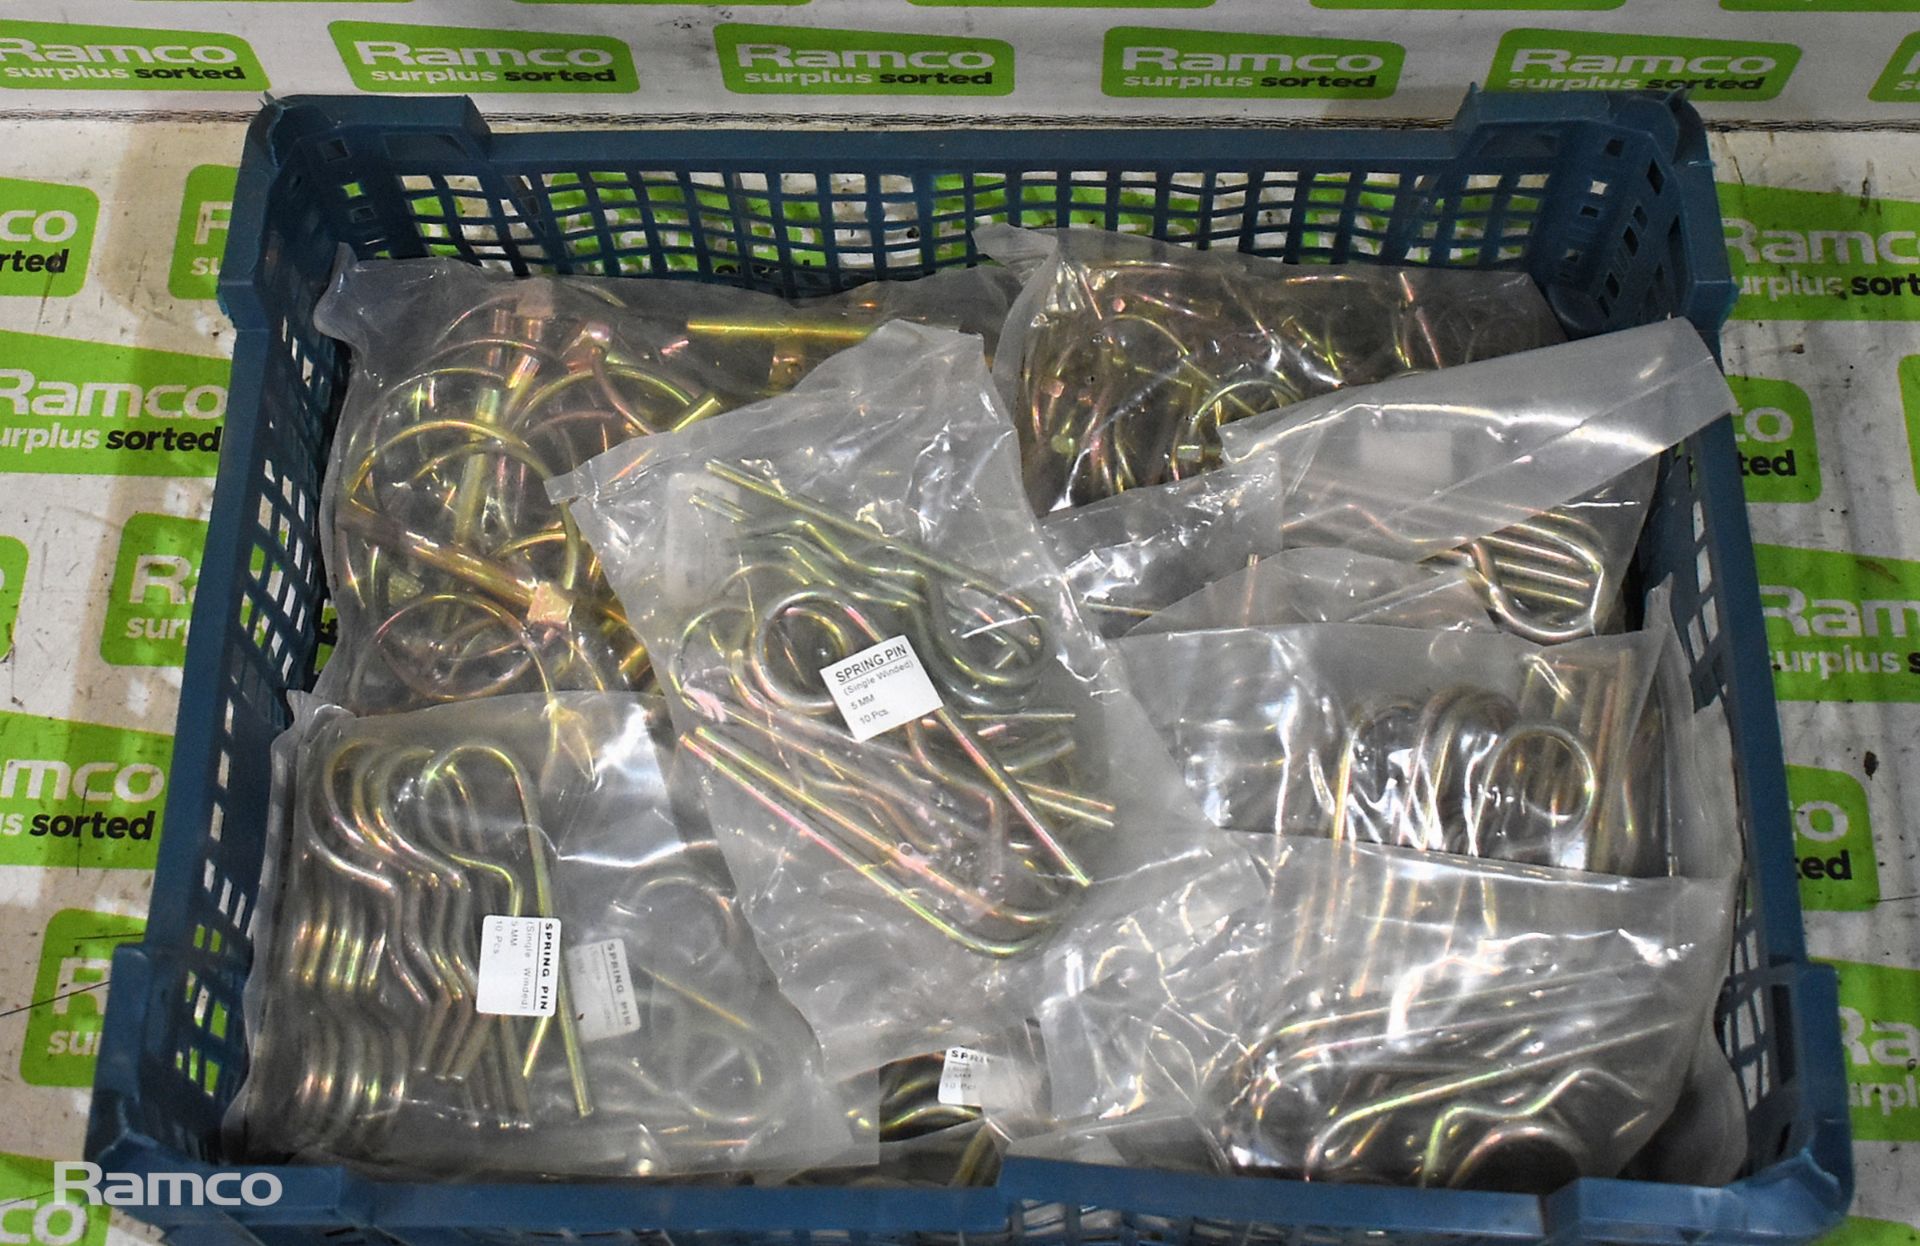 75x Linch pins, 100x R-clips